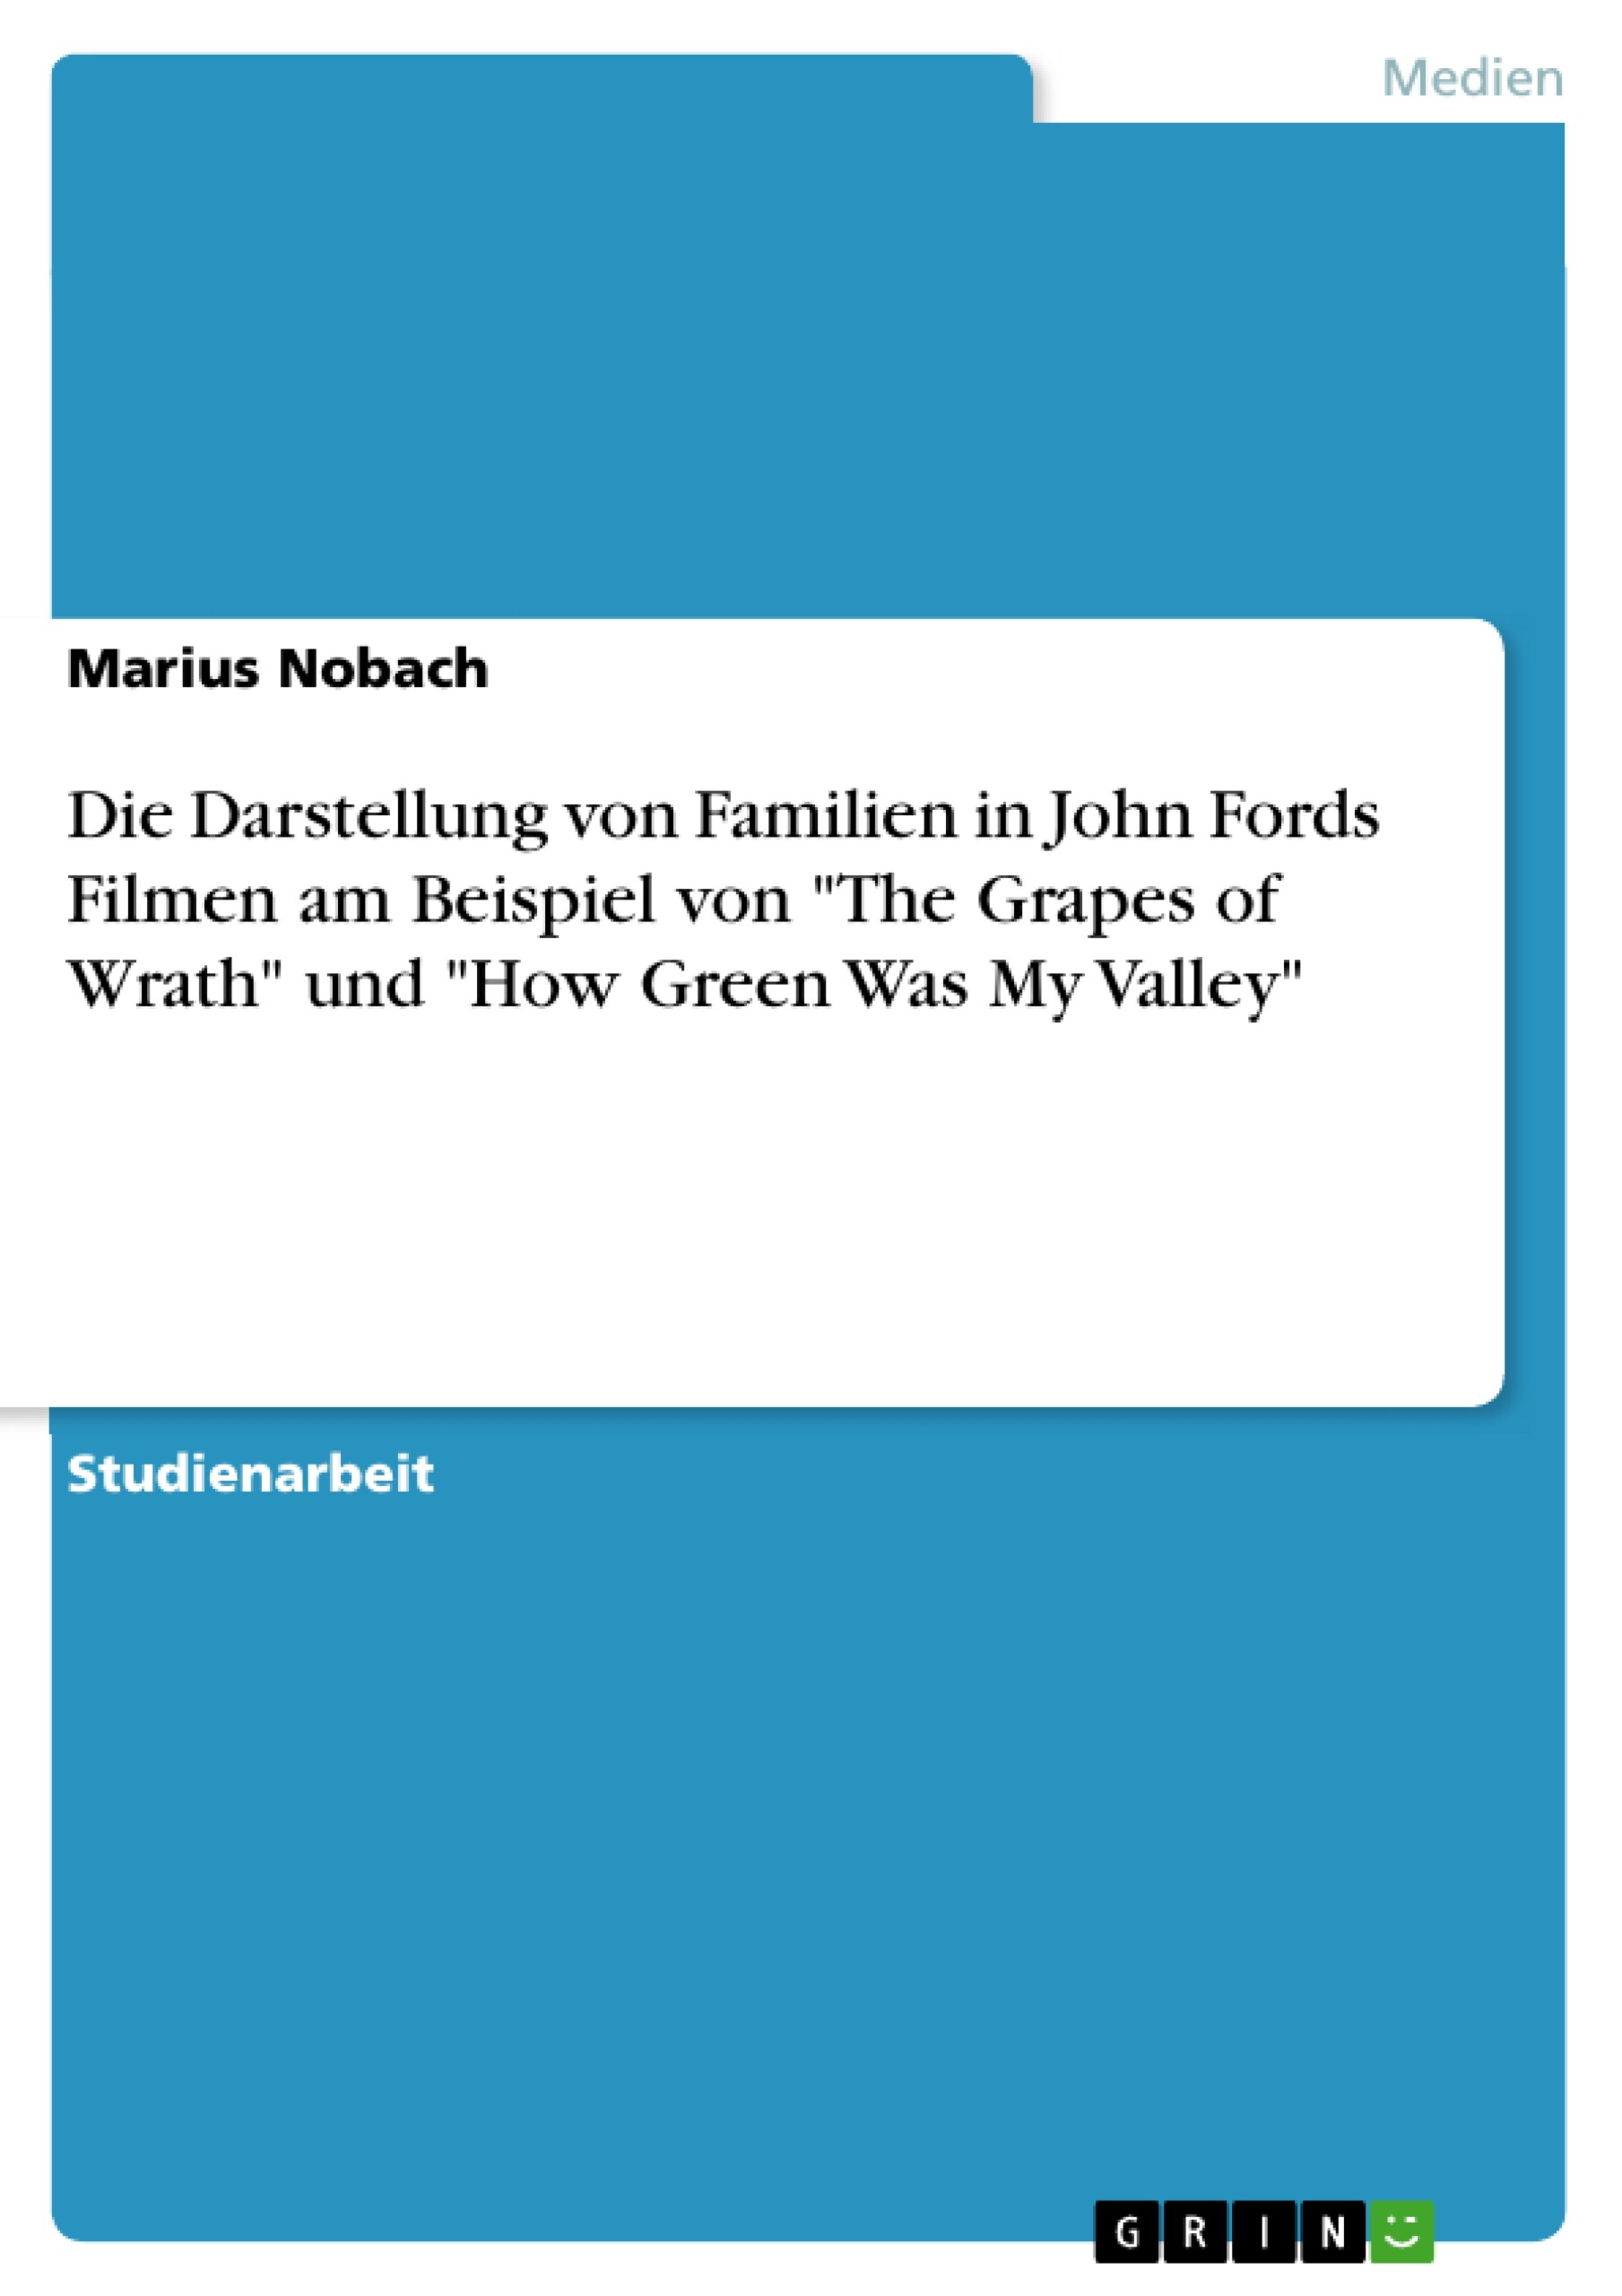 Die Darstellung von Familien in John Fords Filmen am Beispiel von 'The Grapes of Wrath' und 'How Green Was My Valley'